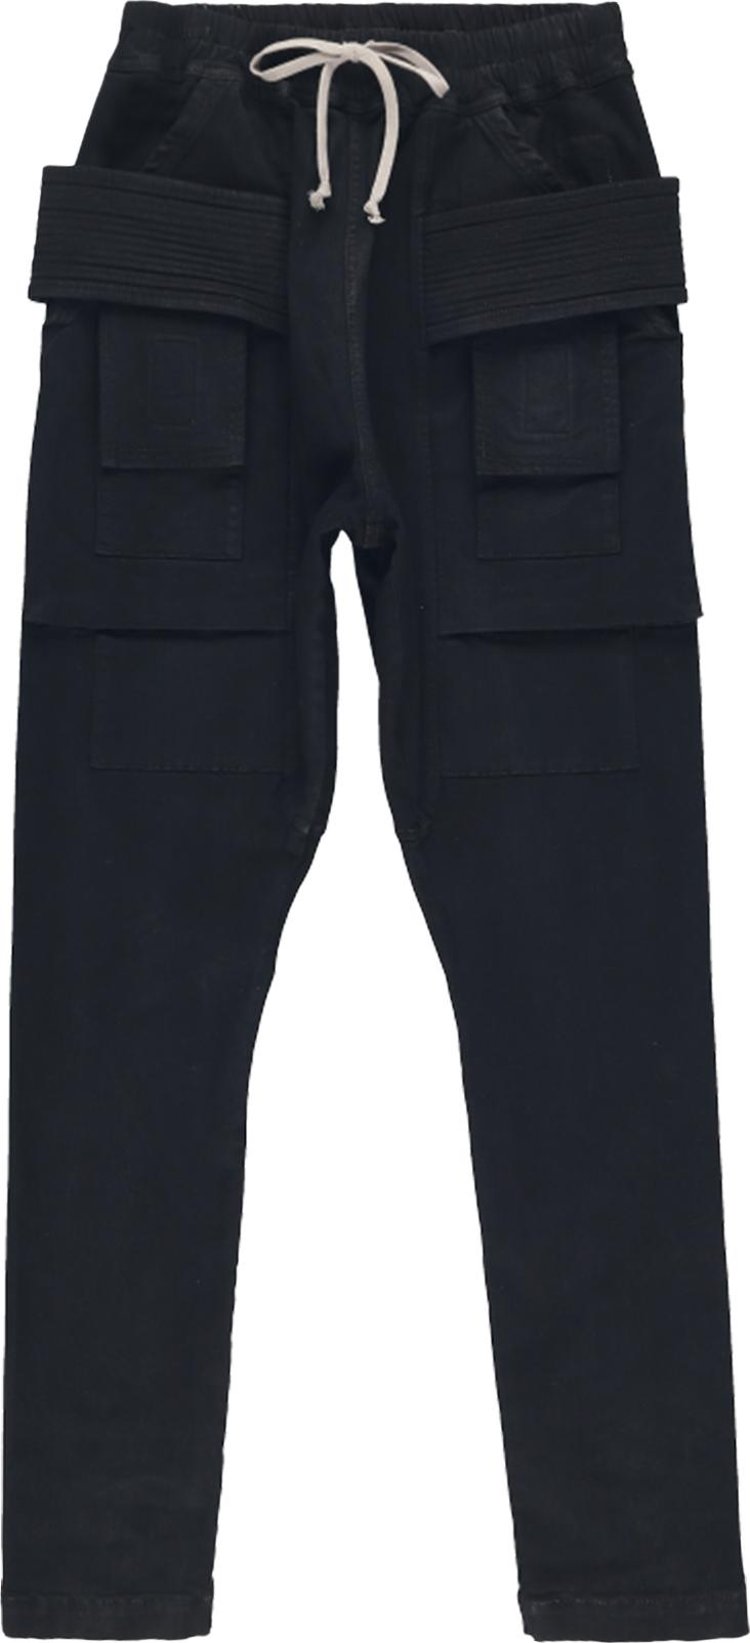 Брюки Rick Owens DRKSHDW Creatch Cargo 'Black', черный черные джинсовые шорты карго creatch cargo pods rick owens drkshdw